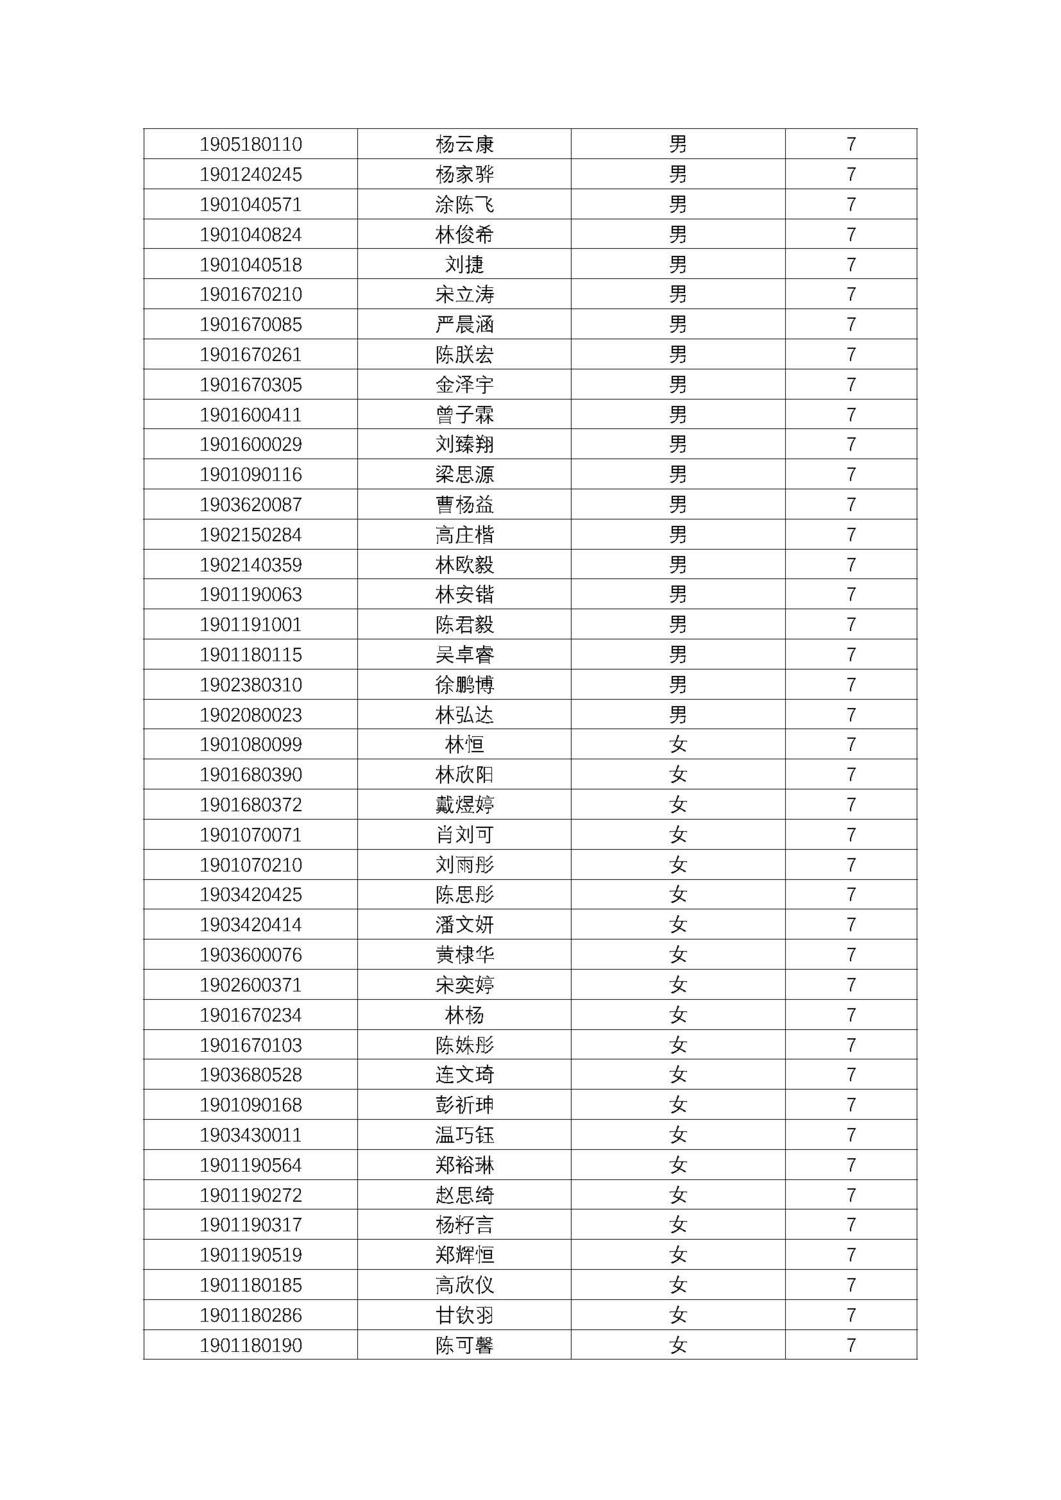 福州第十八中学2019级高一新生分班名单及报到须知_页面_09.jpg